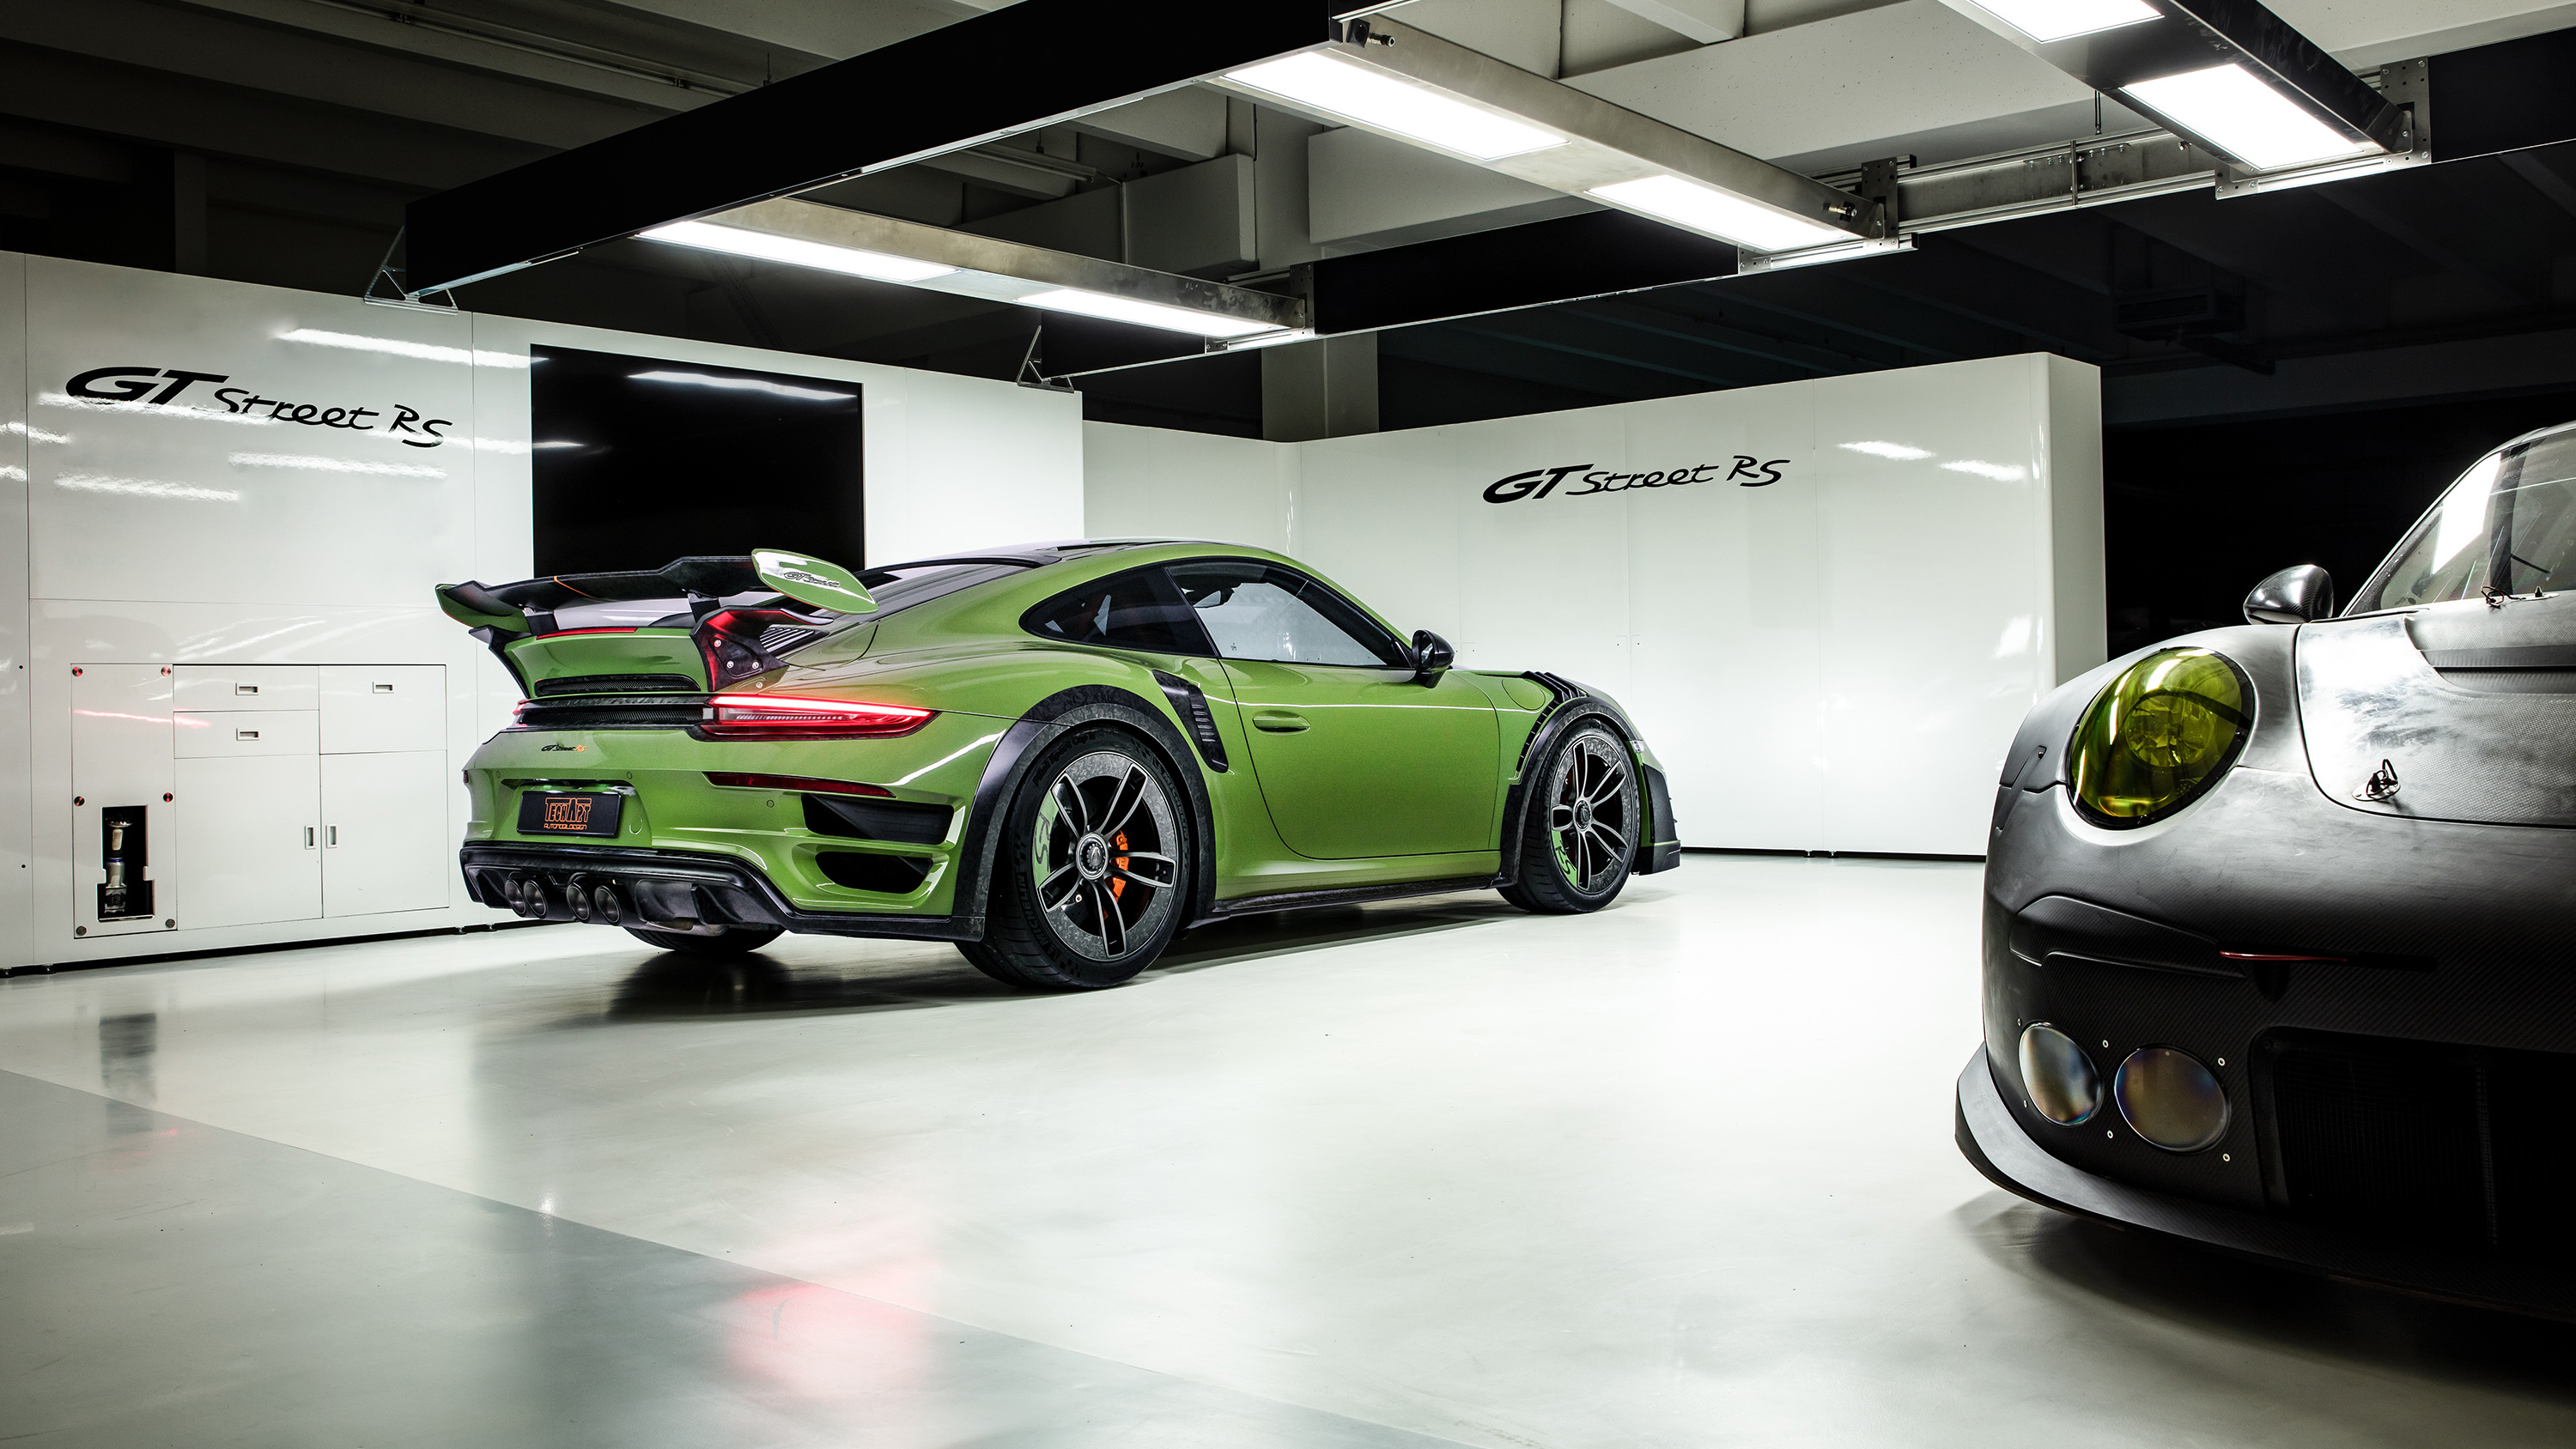 Porsche 911 Gt Street Rs , HD Wallpaper & Backgrounds